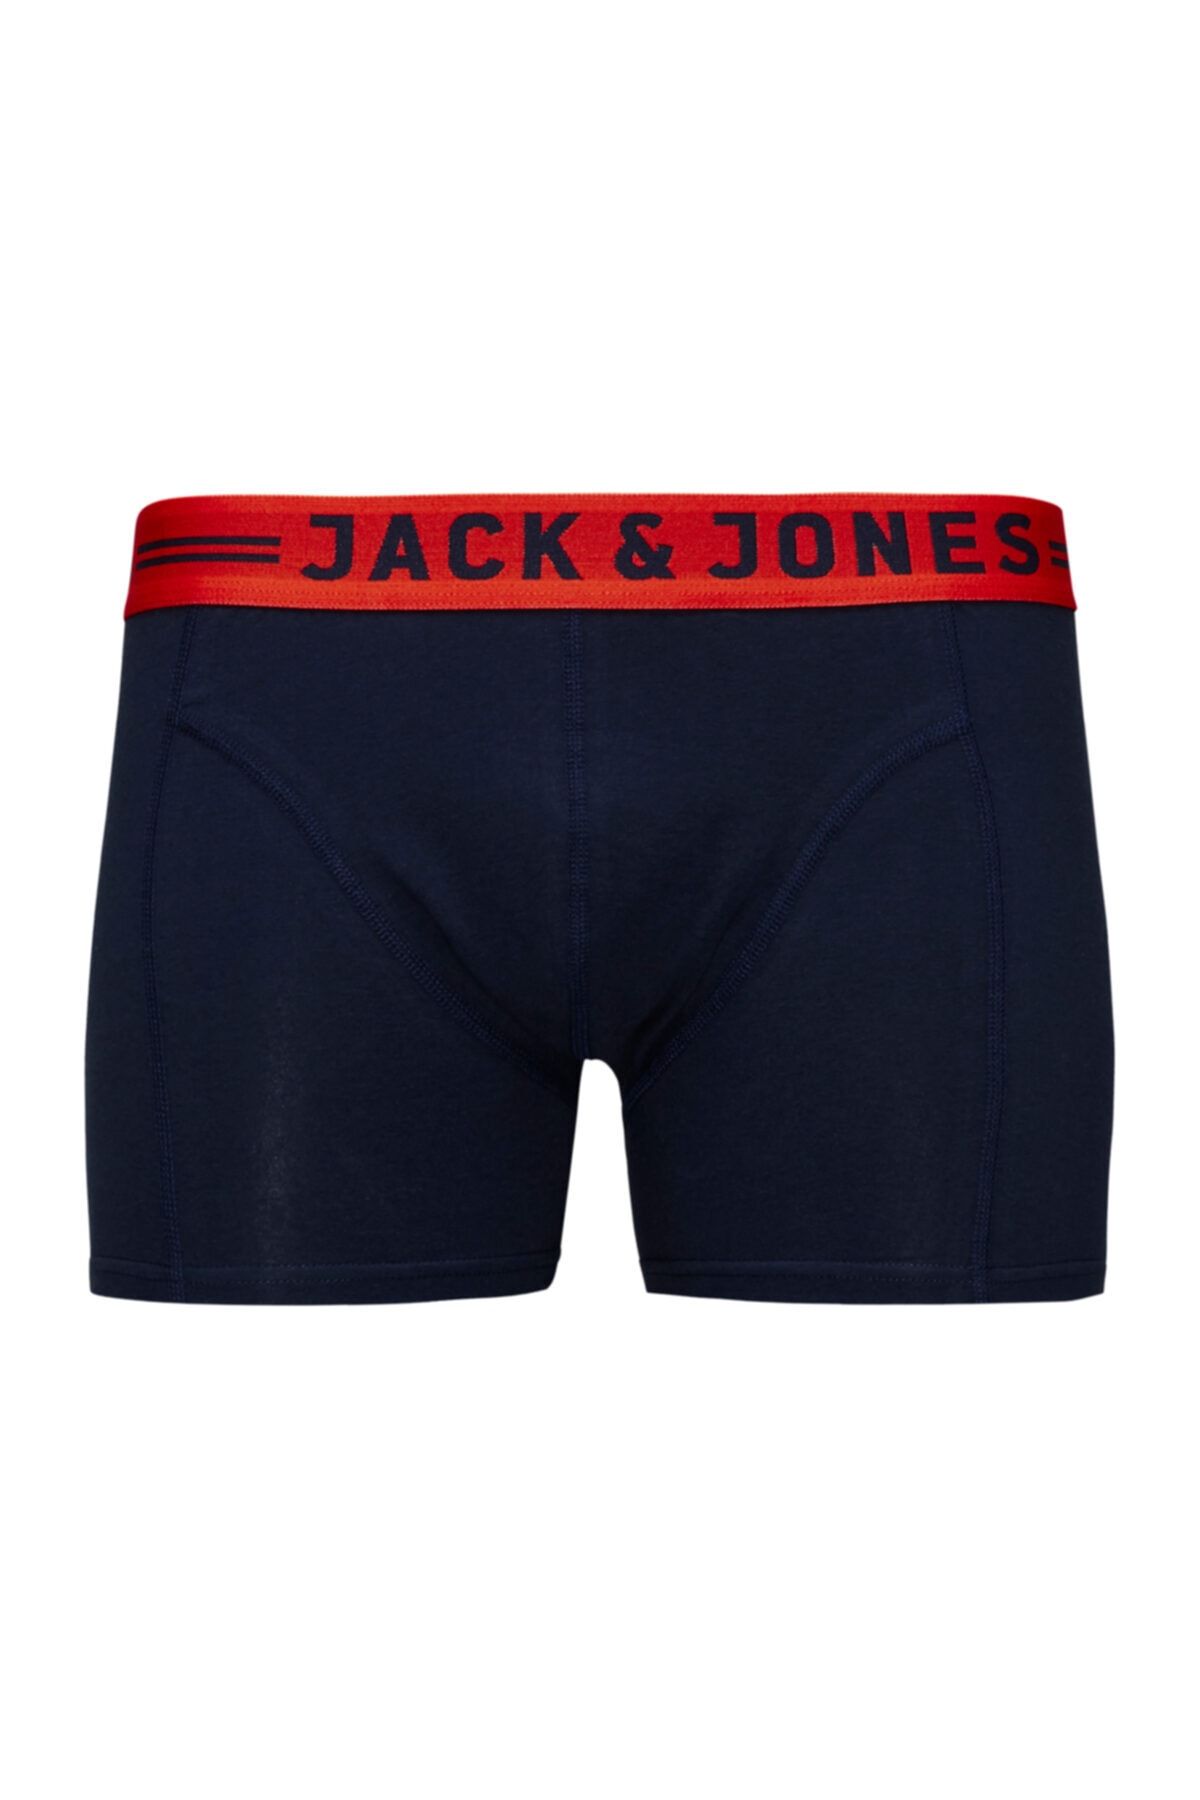 Jack & Jones Jack Jones Jacsense Erkek Boxer 12111773sg